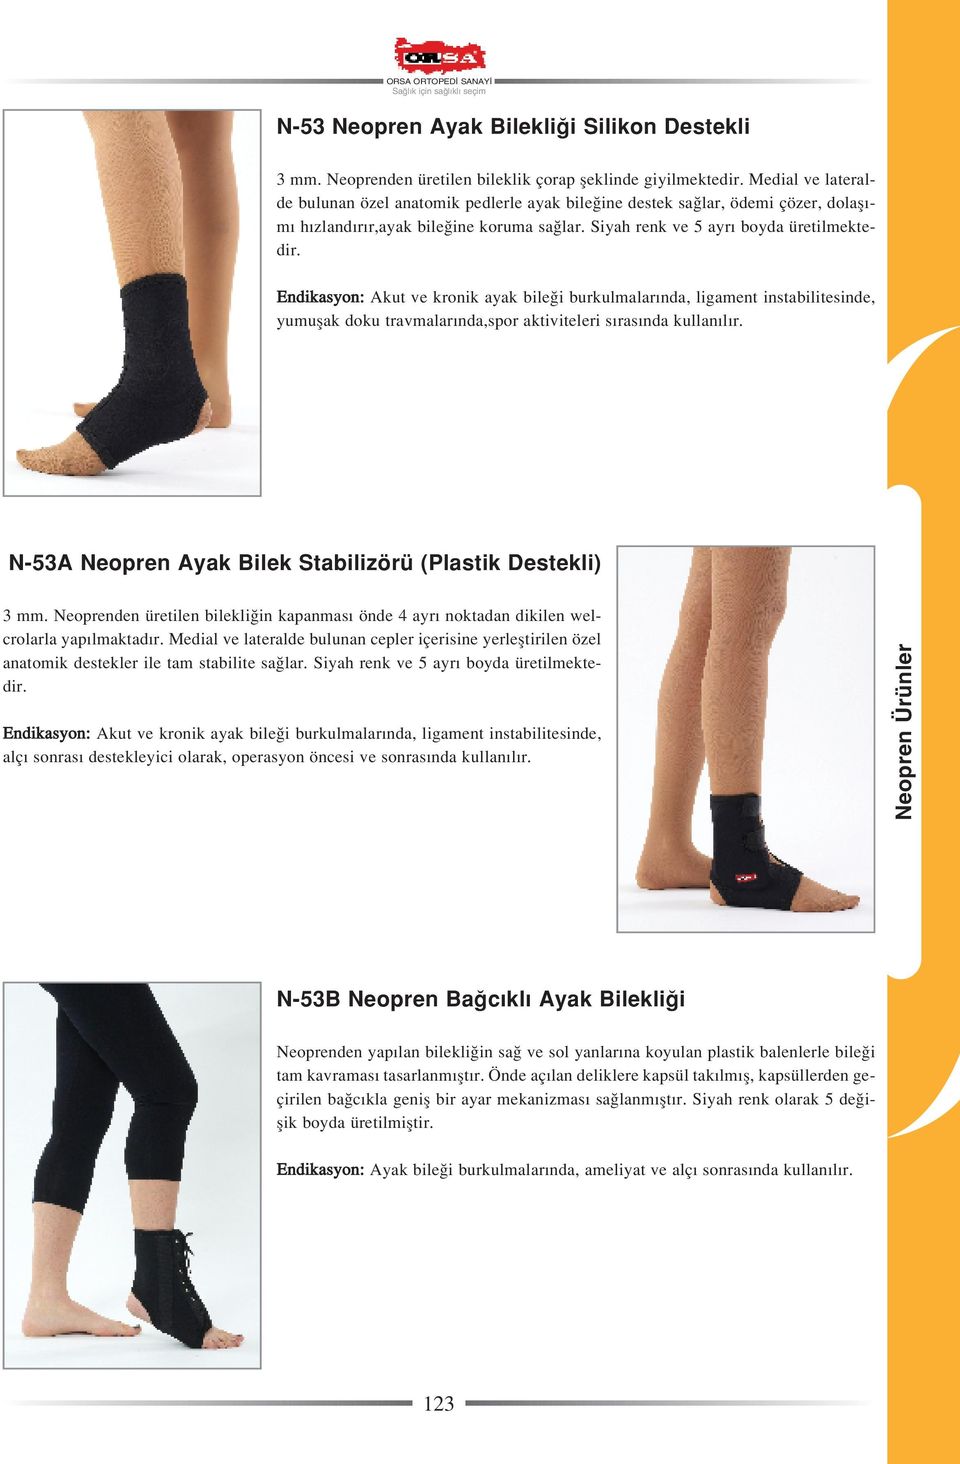 Endikasyon: Akut ve kronik ayak bile i burkulmalar nda, ligament instabilitesinde, yumuflak doku travmalar nda,spor aktiviteleri s ras nda N-53A Neopren Ayak Bilek Stabilizörü (Plastik Destekli) 3 mm.